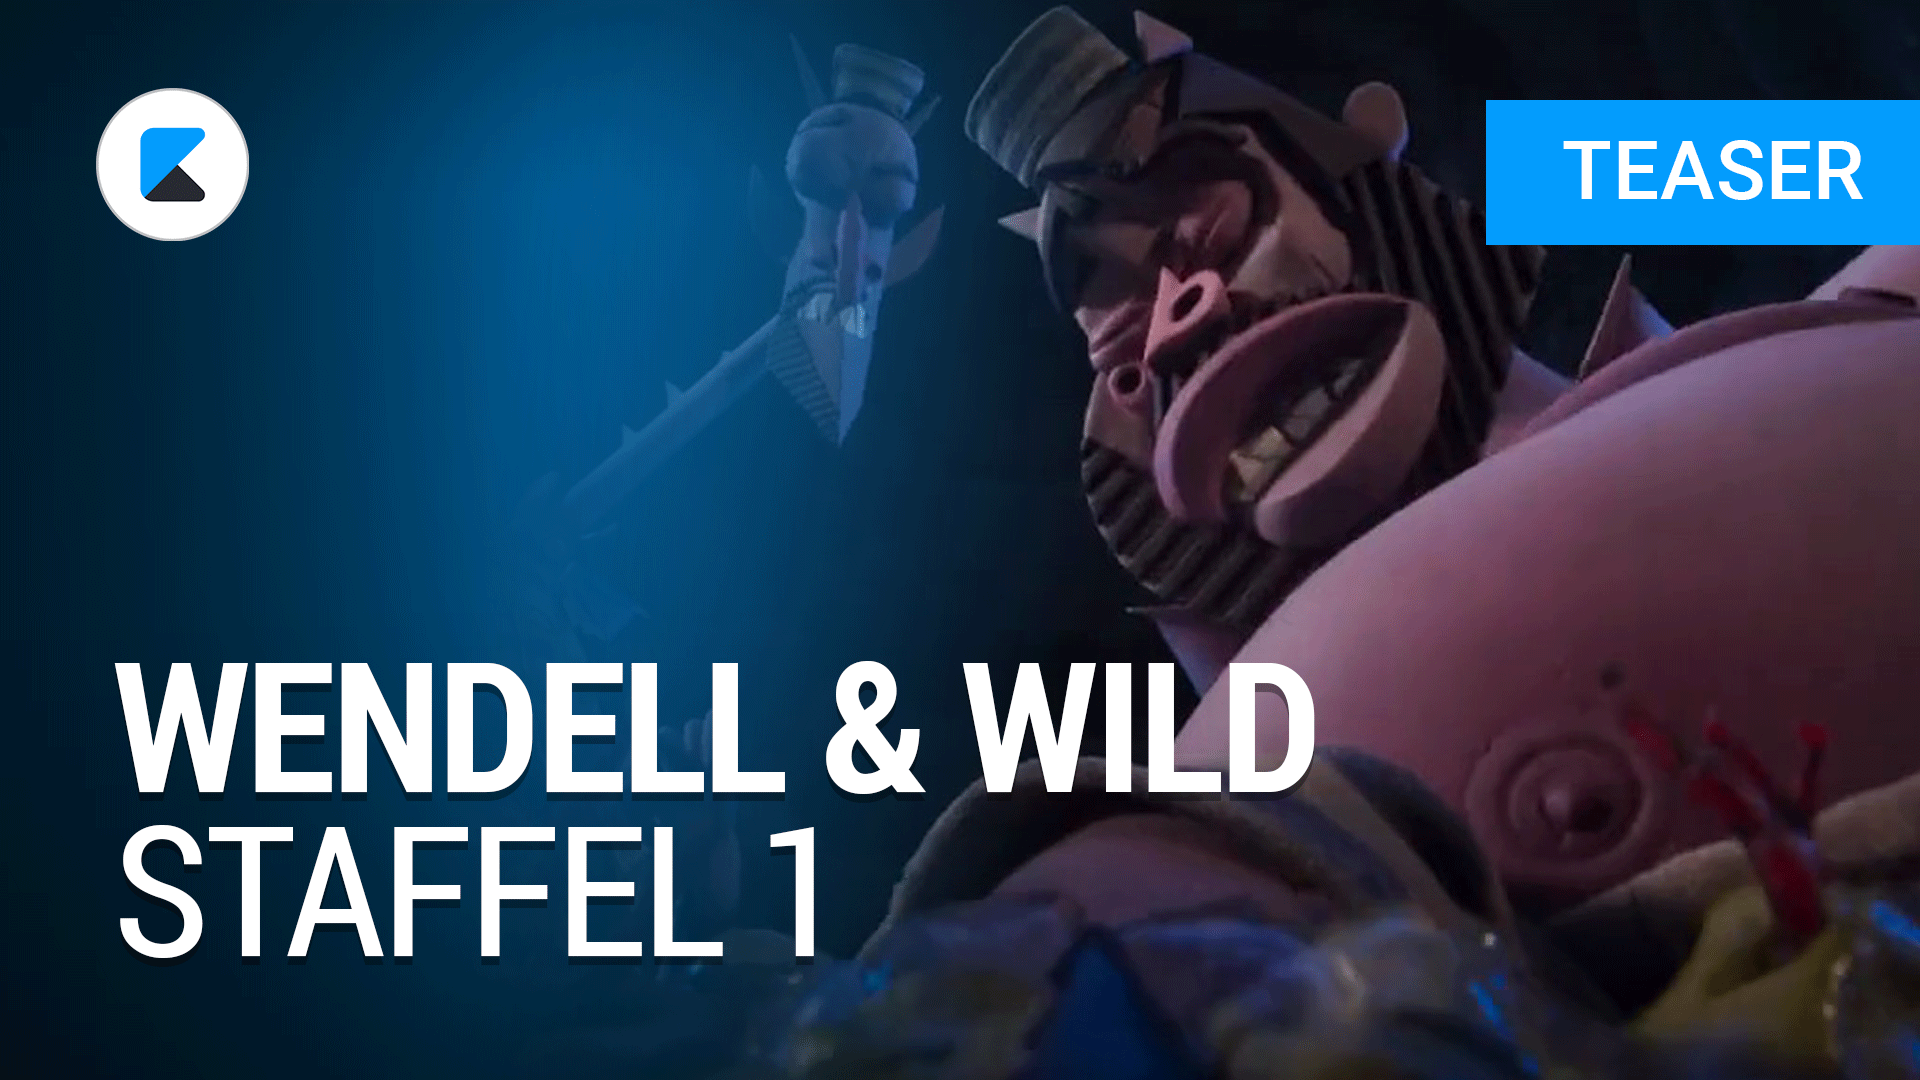 Wendell & Wild Teaser Netflix